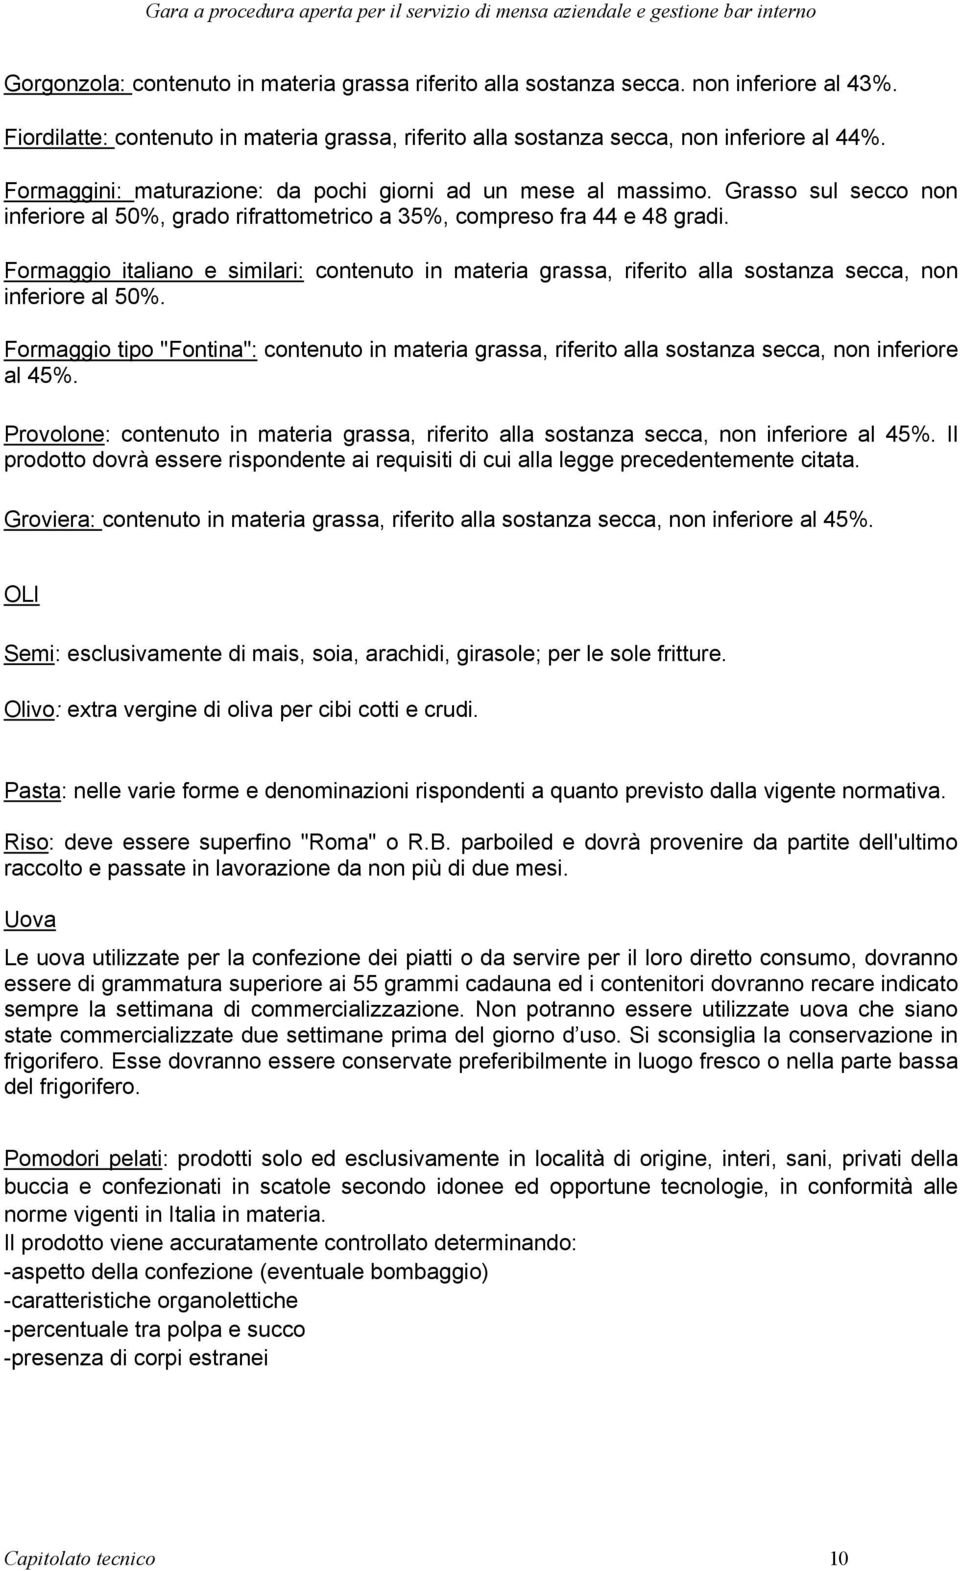 Formaggio italiano e similari: contenuto in materia grassa, riferito alla sostanza secca, non inferiore al 50%.